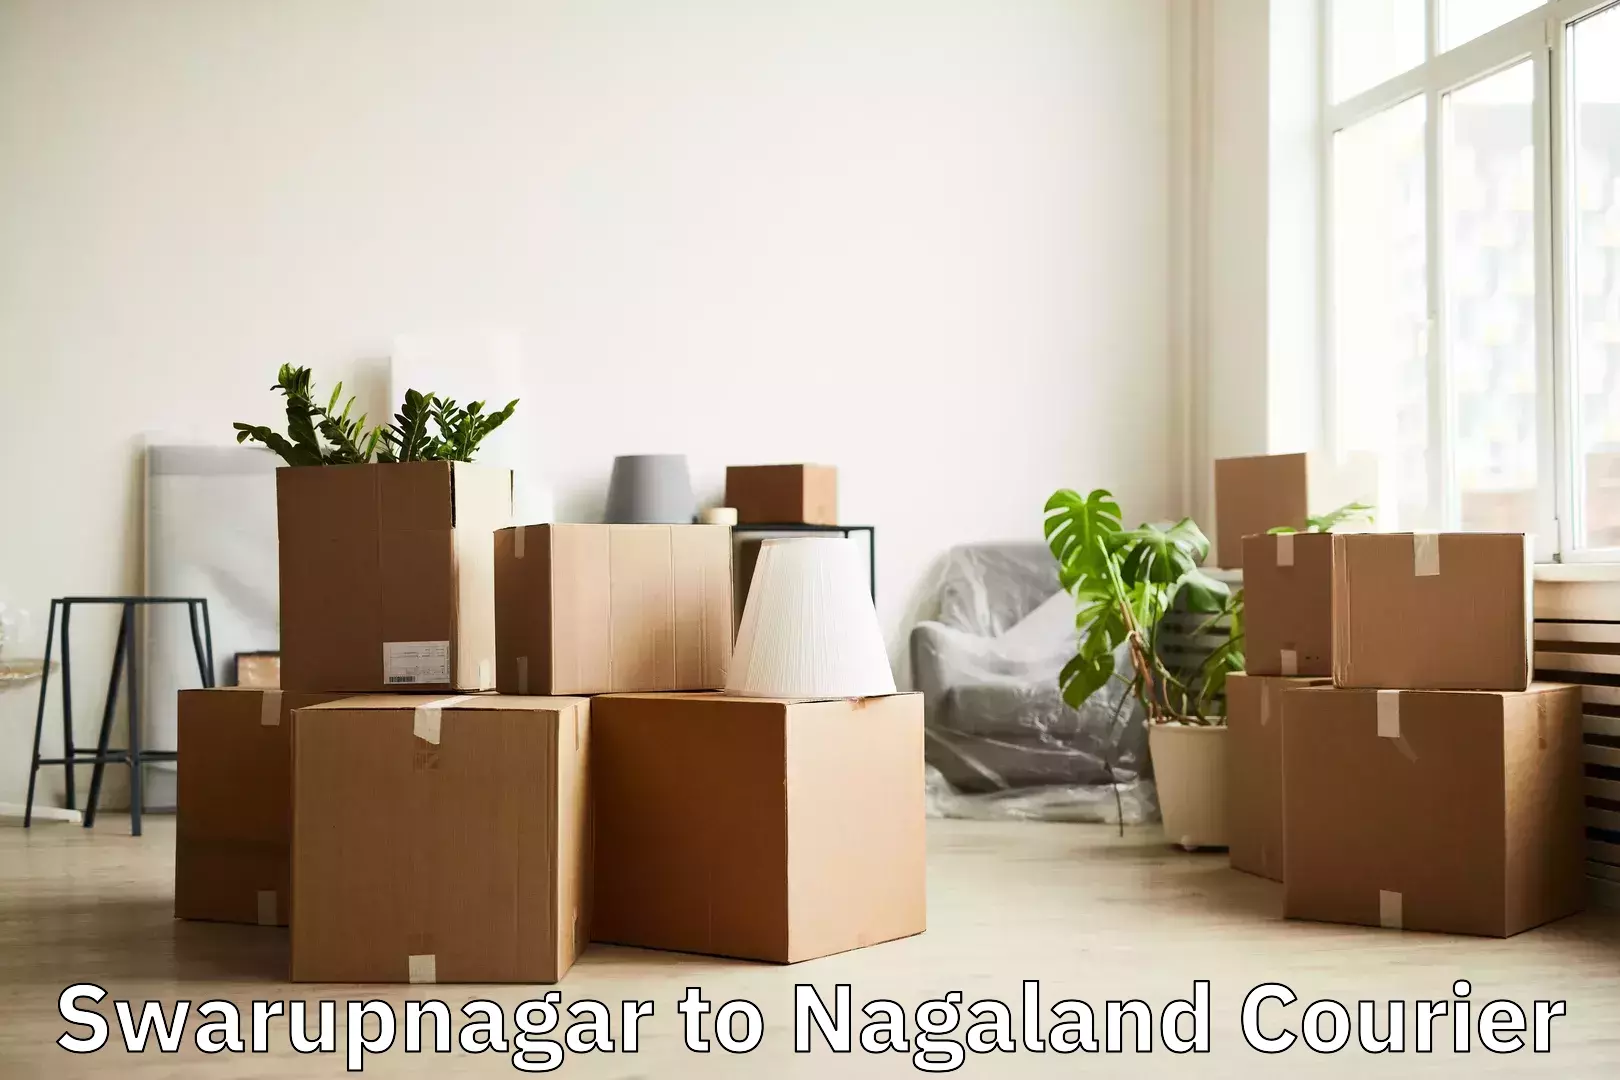 Baggage transport network Swarupnagar to Tuensang